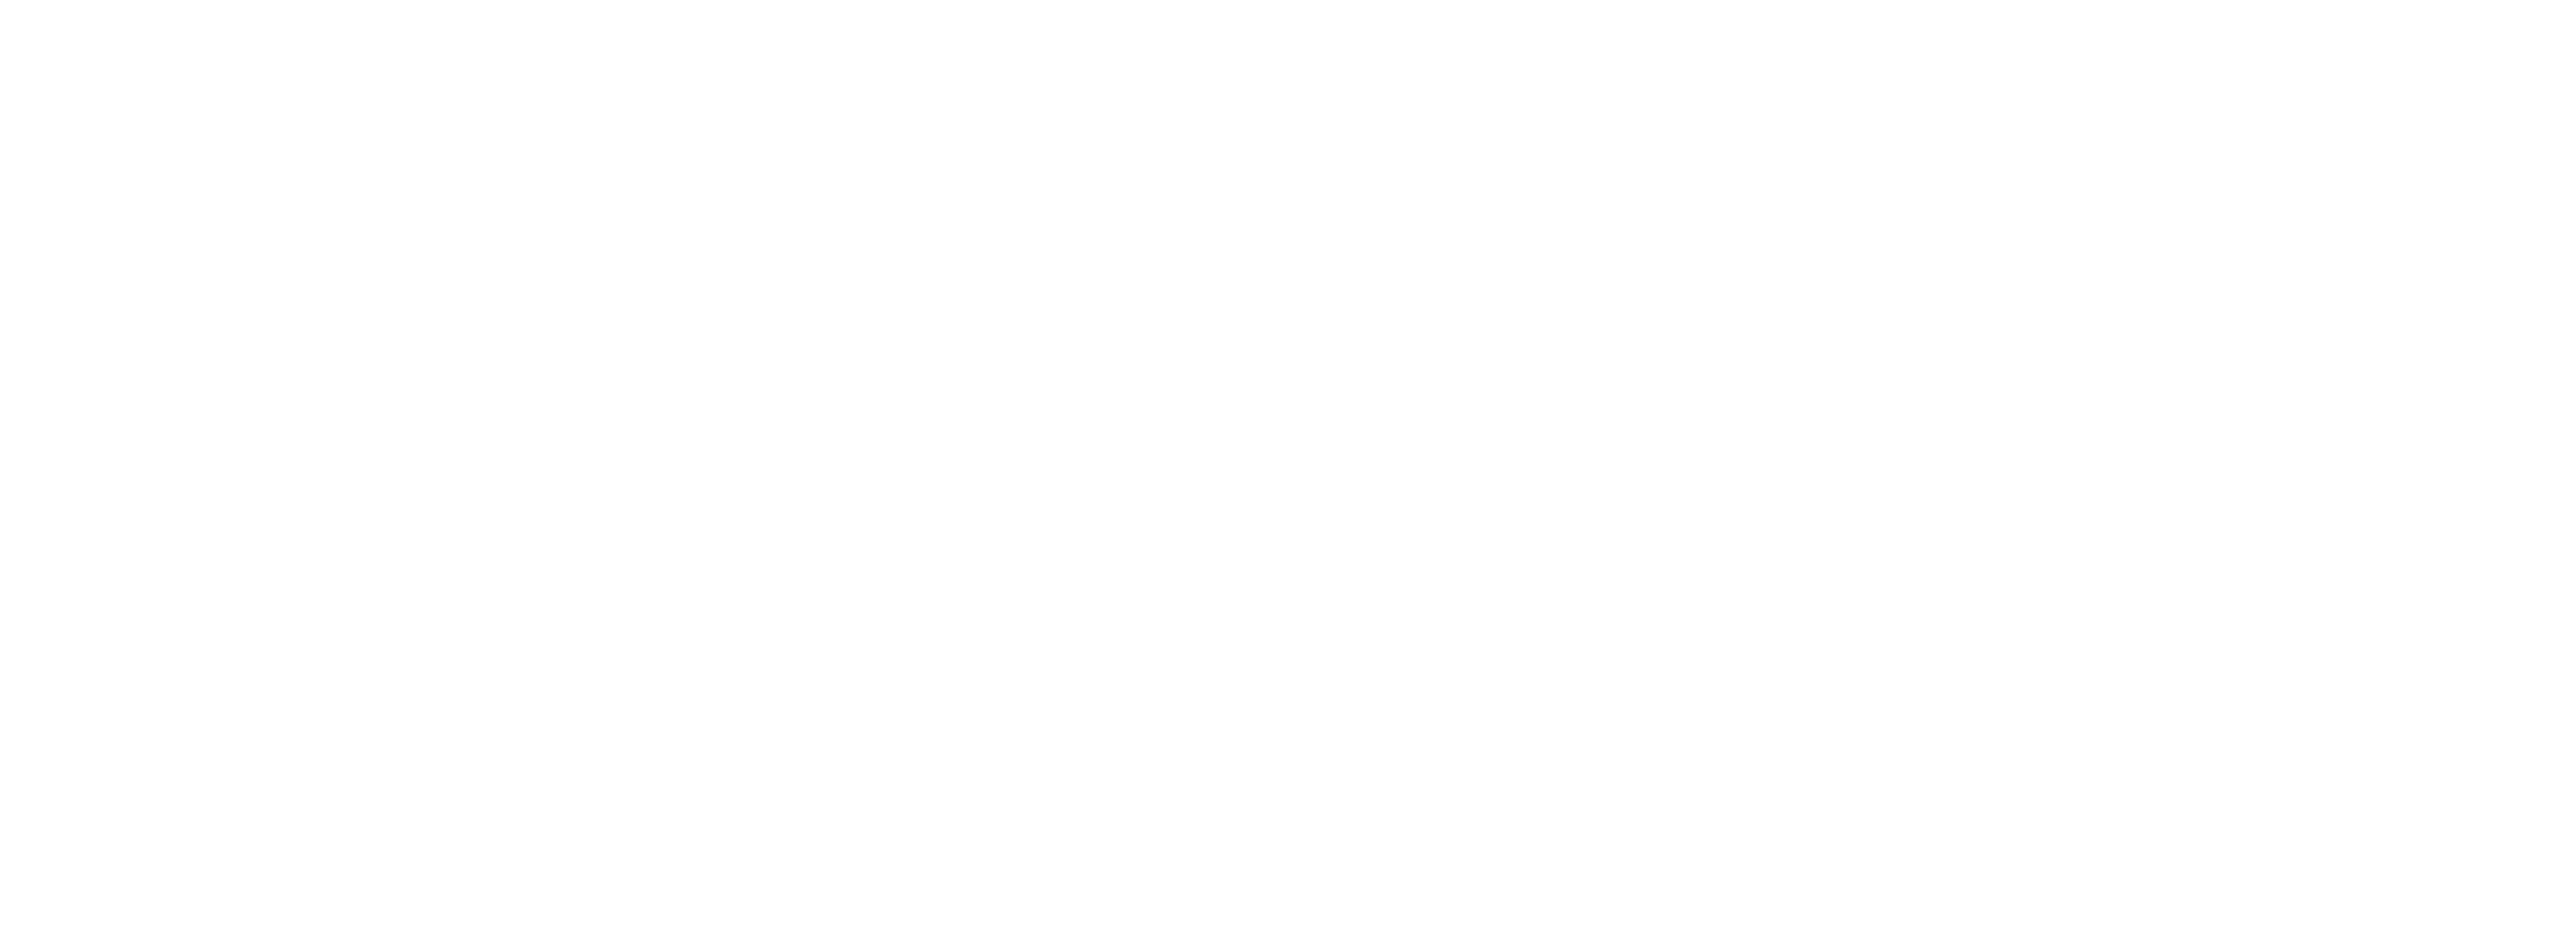 Zionsville Village Residents Association